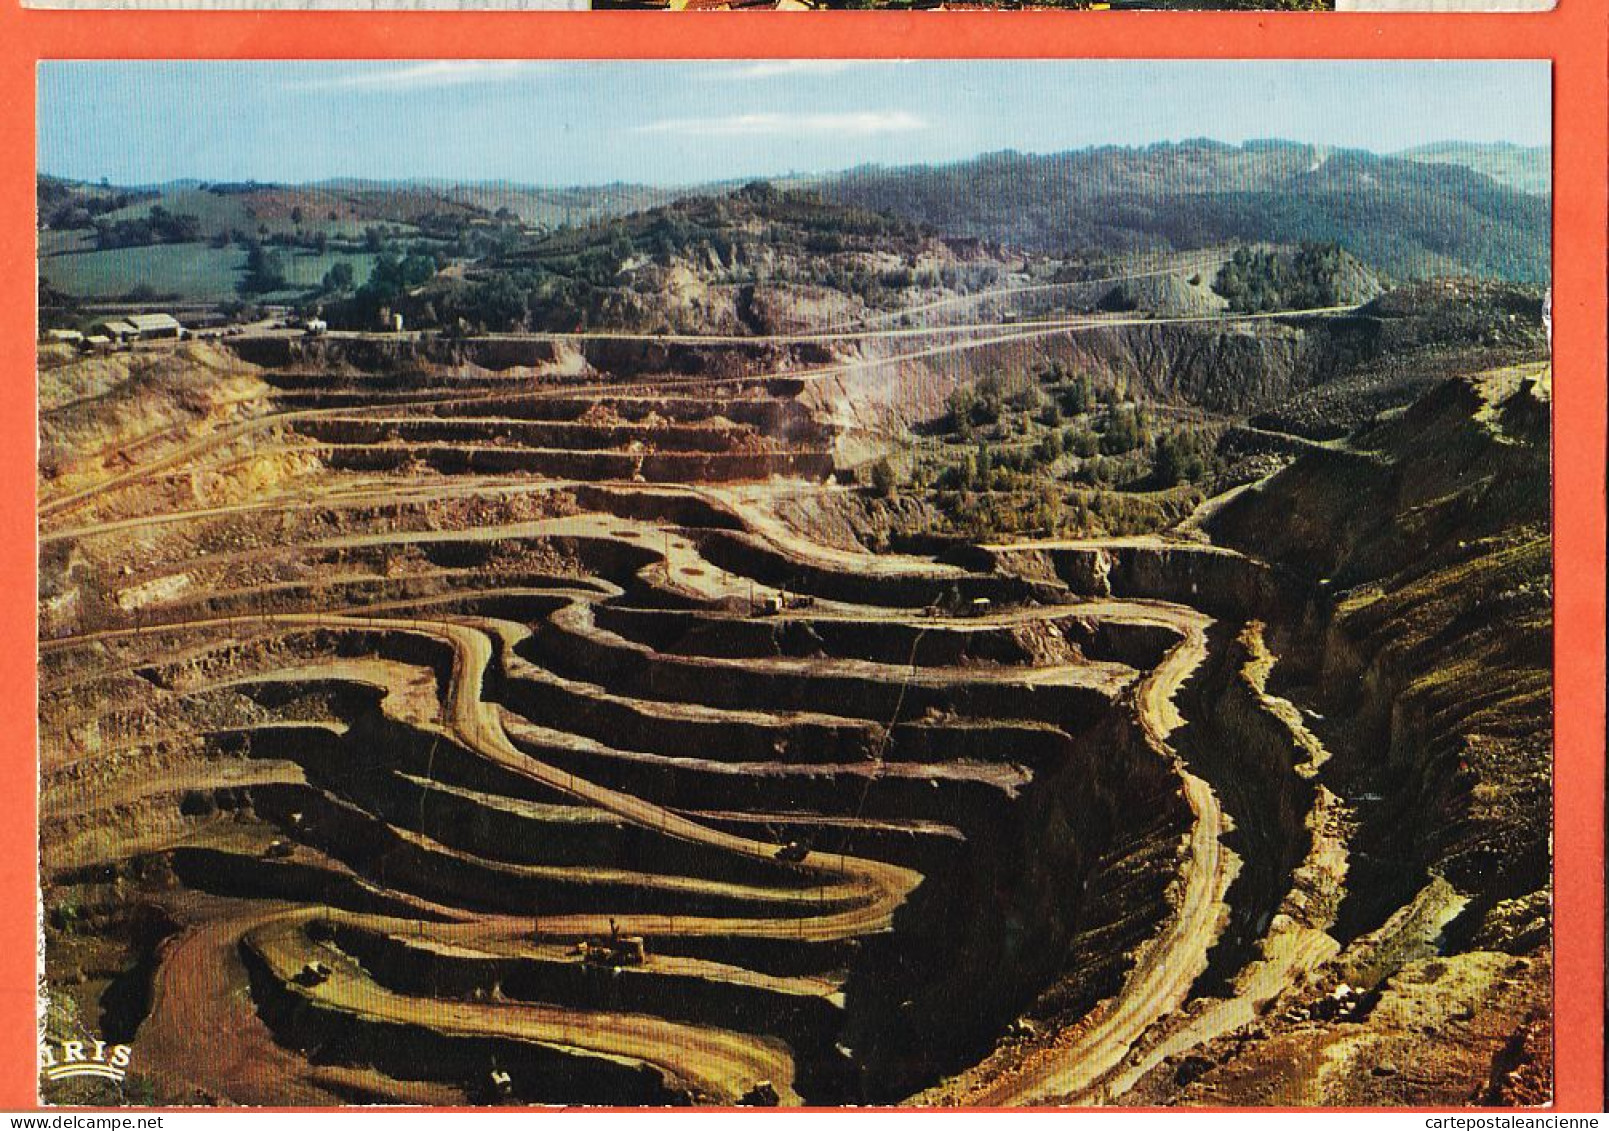 31392 / DECAZEVILLE 12-Aveyron Mine Charbon LA DECOUVERTE Unique Europe Extraction Minerai Ciel Ouvert 1960s THEOJAC 7 - Decazeville